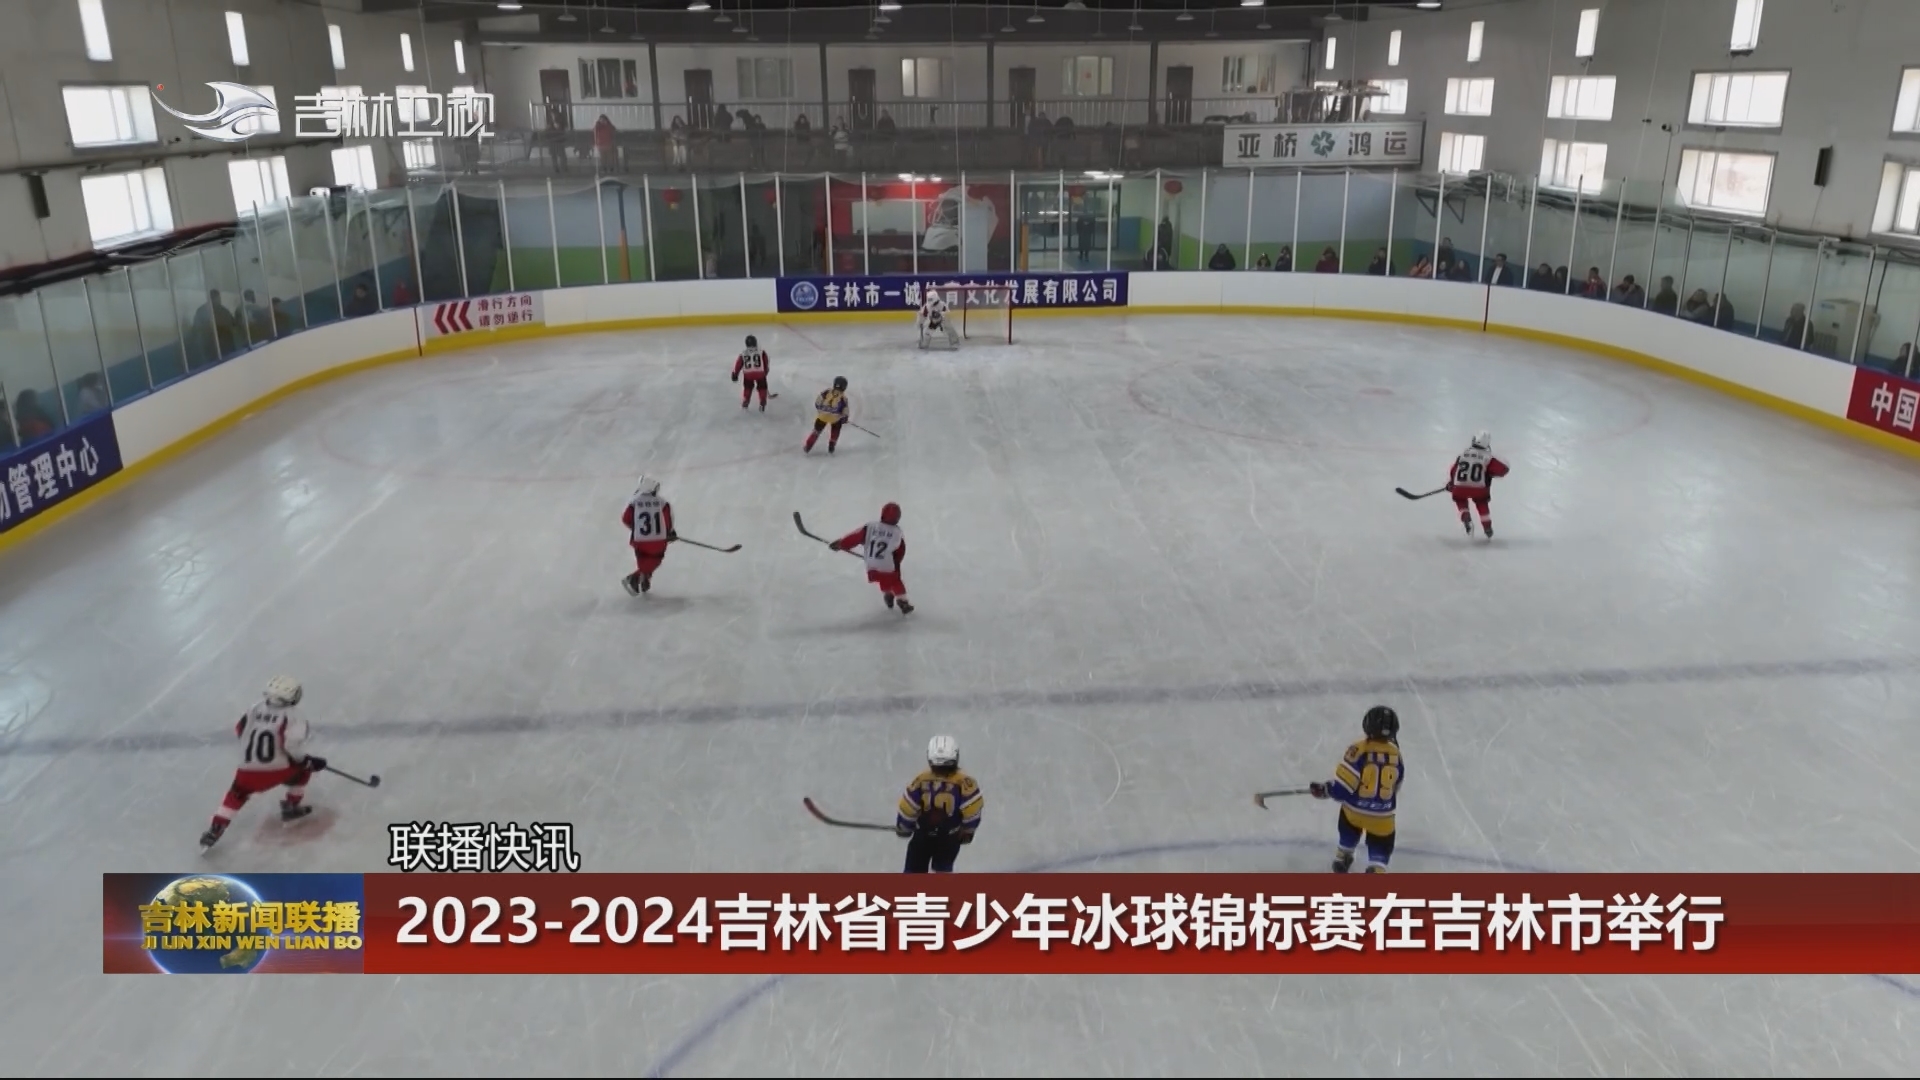 【联播快讯】2023-2024吉林省青少年冰球锦标赛在吉林市举行